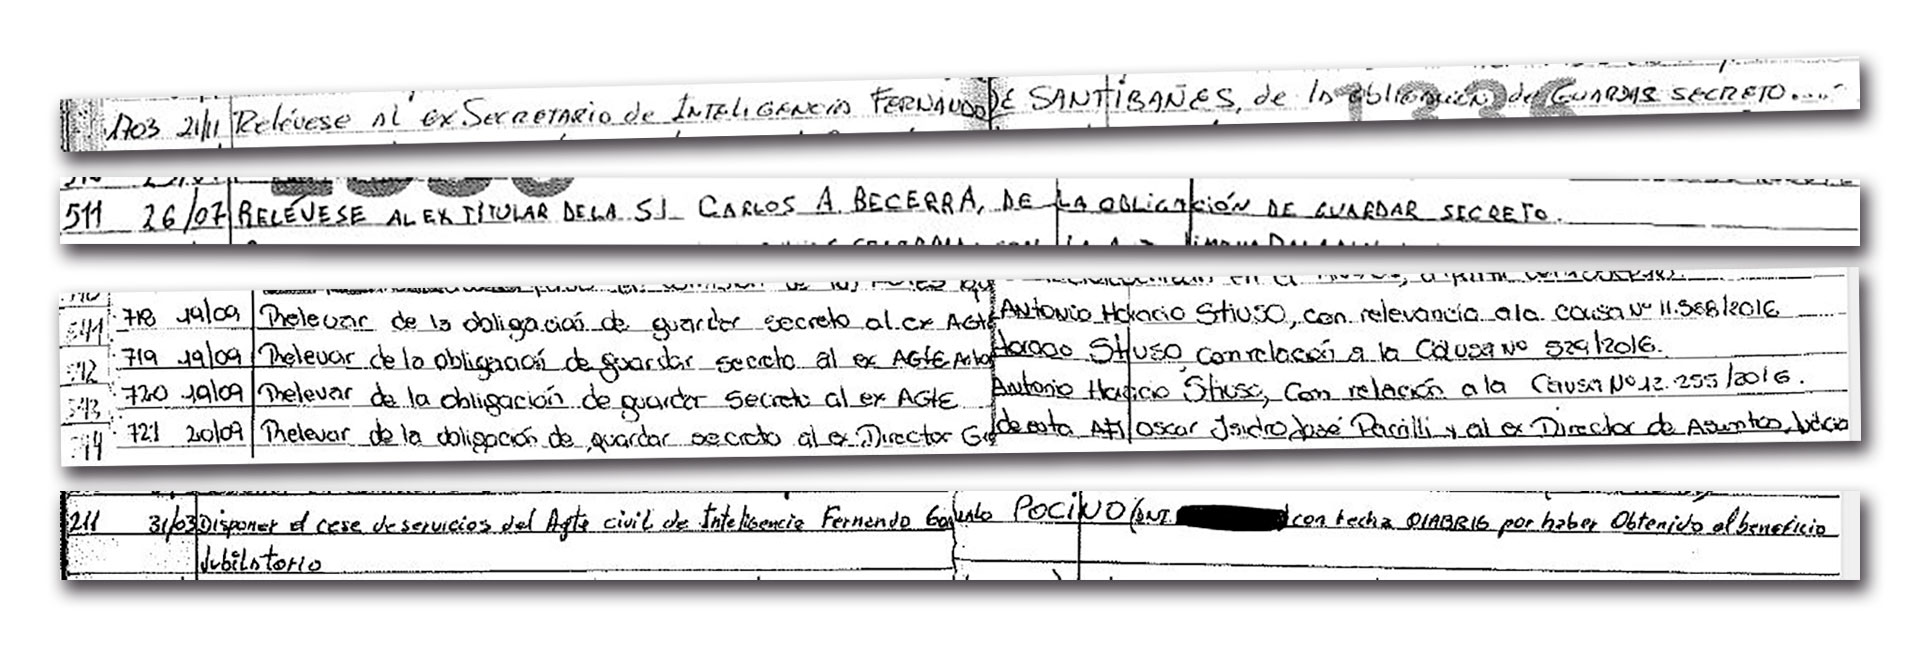 De Santibañes, Becerra, Parilli, Stiuso y Pocino, algunos de los nombres que aparecen en el documento.